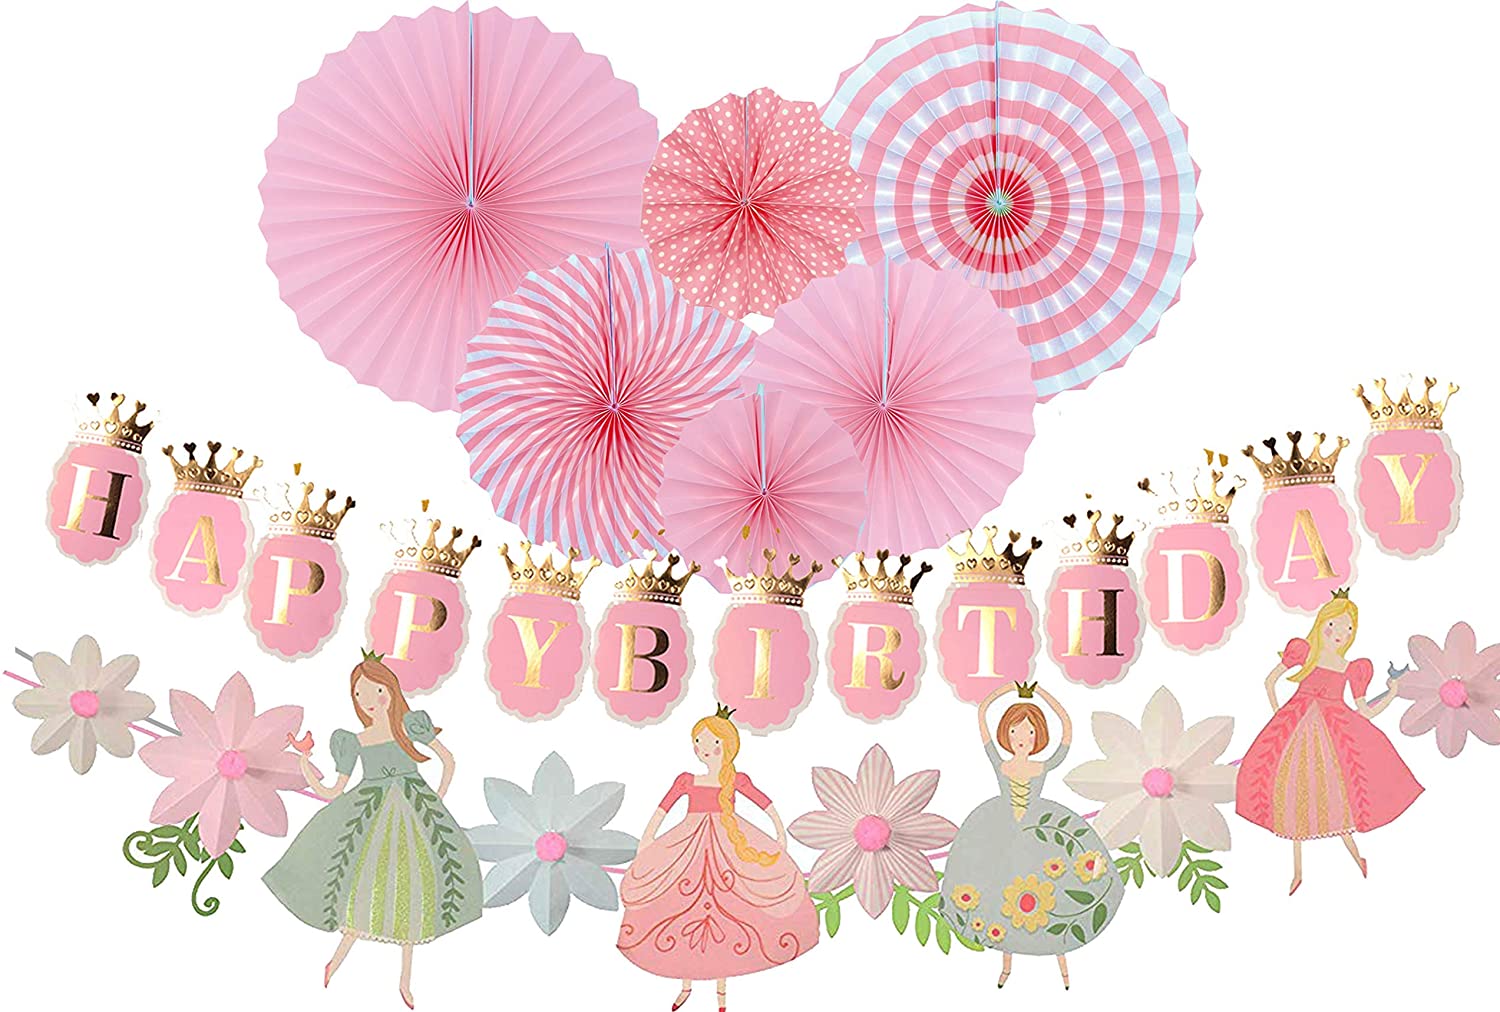 Набор для кэнди бара принцесса фламинго наборы для дня рождения, праздника распечатай к празднику (бесплатно) каталог статей